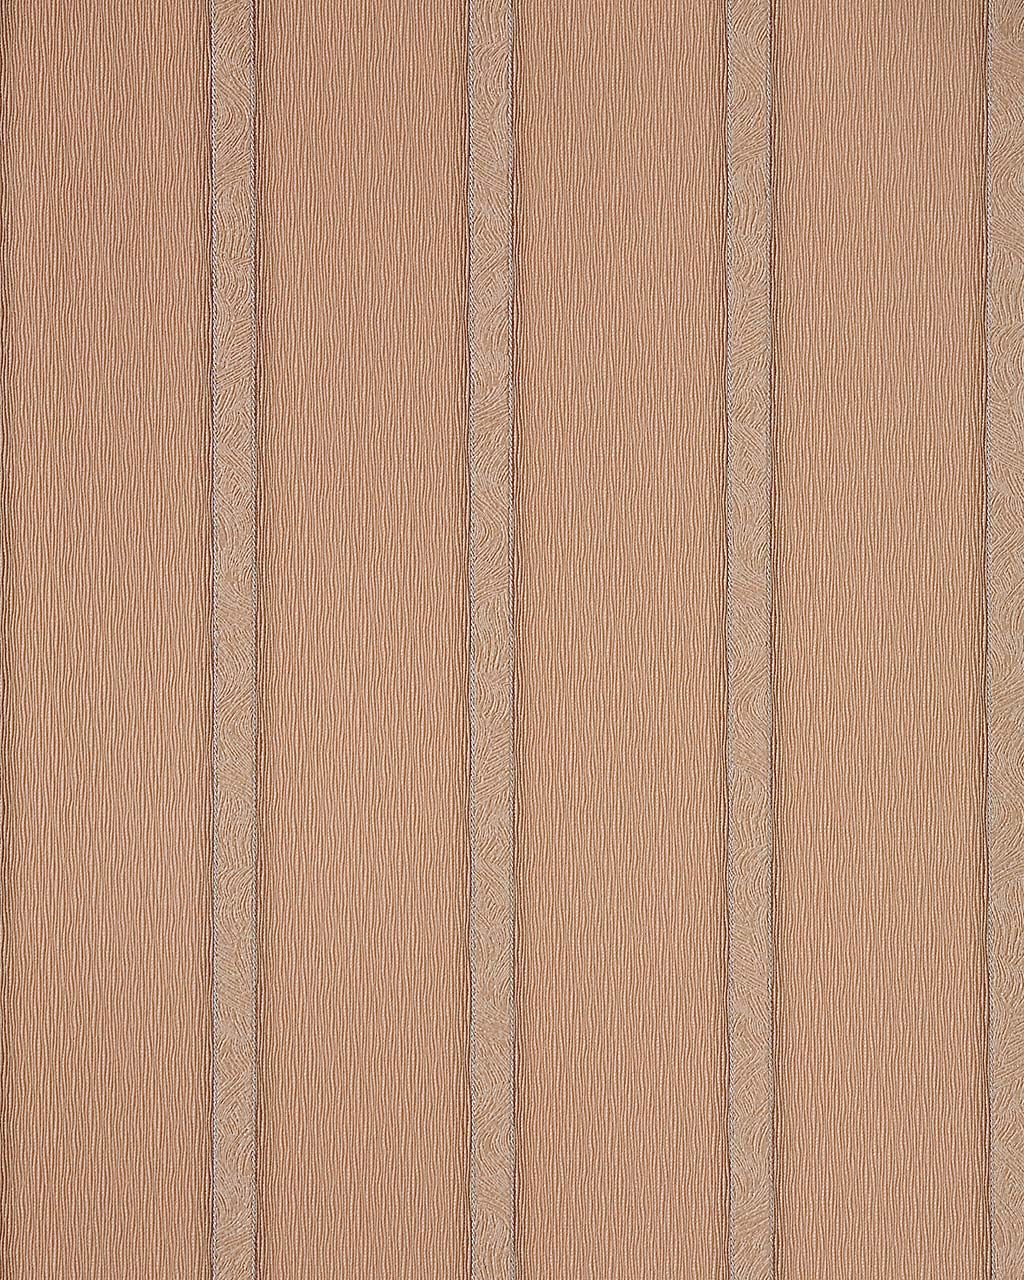 EDEM 174 36 Design Streifen Tapete gestreift hell kakao braun silber